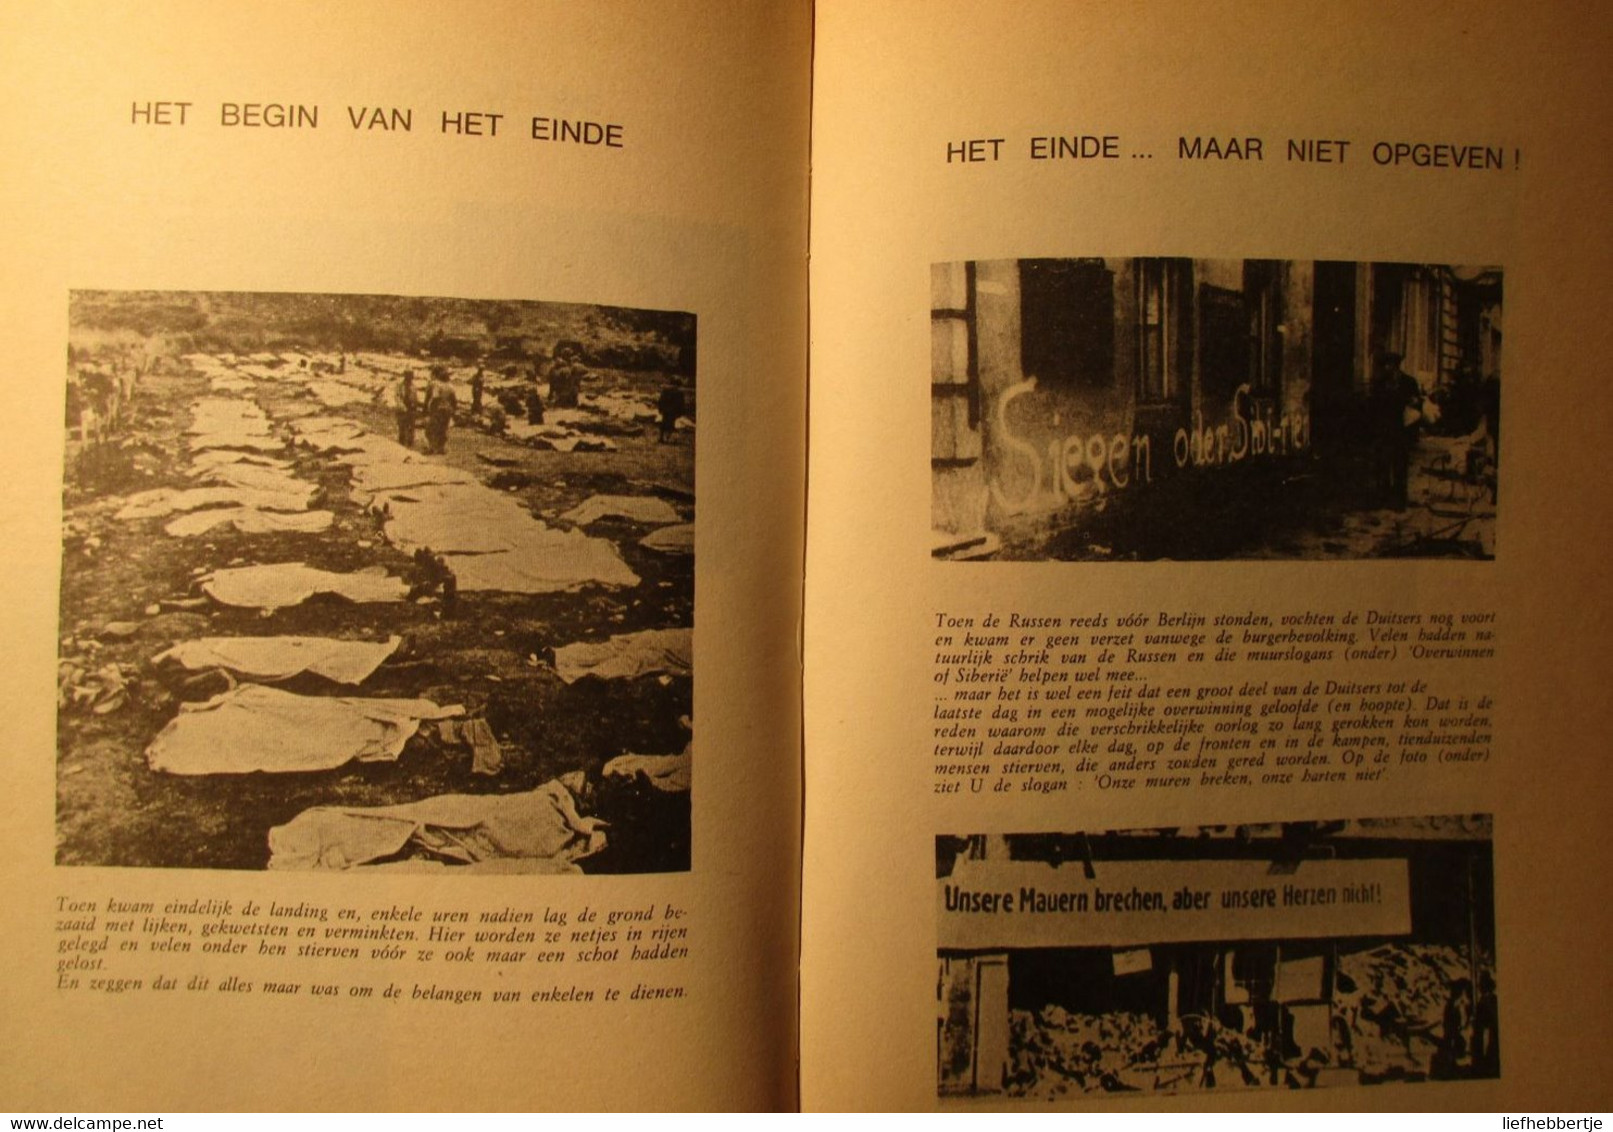 50 Jaar Menselijke Schande - Door F. Van Maele - Uitg. Te Gent Bij De Steenbok - War 1939-45